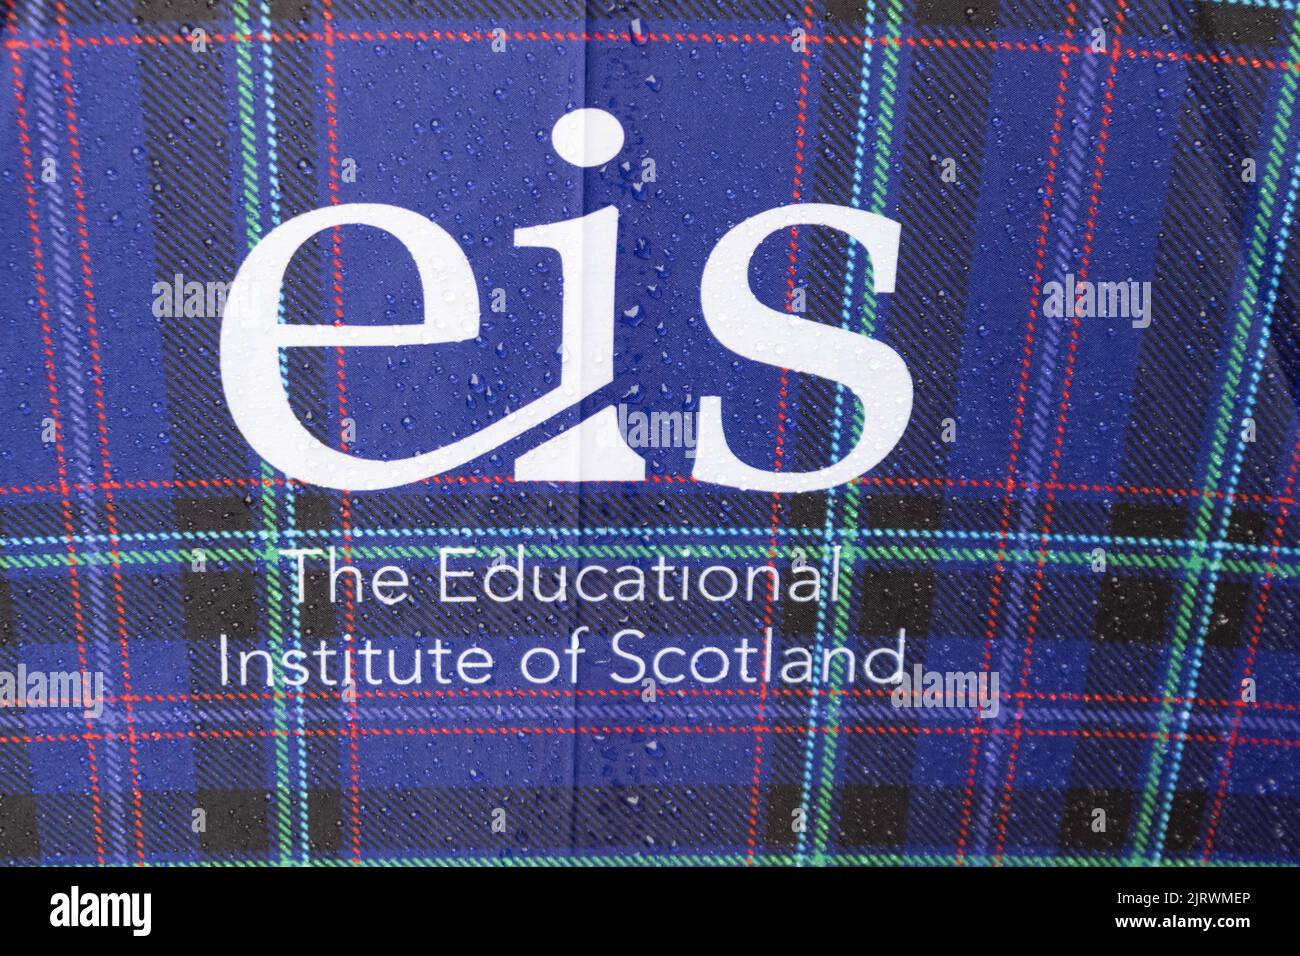 EIS - logo du syndicat d'enseignement de l'Institut d'éducation de l'Écosse sur le parapluie tartan Banque D'Images